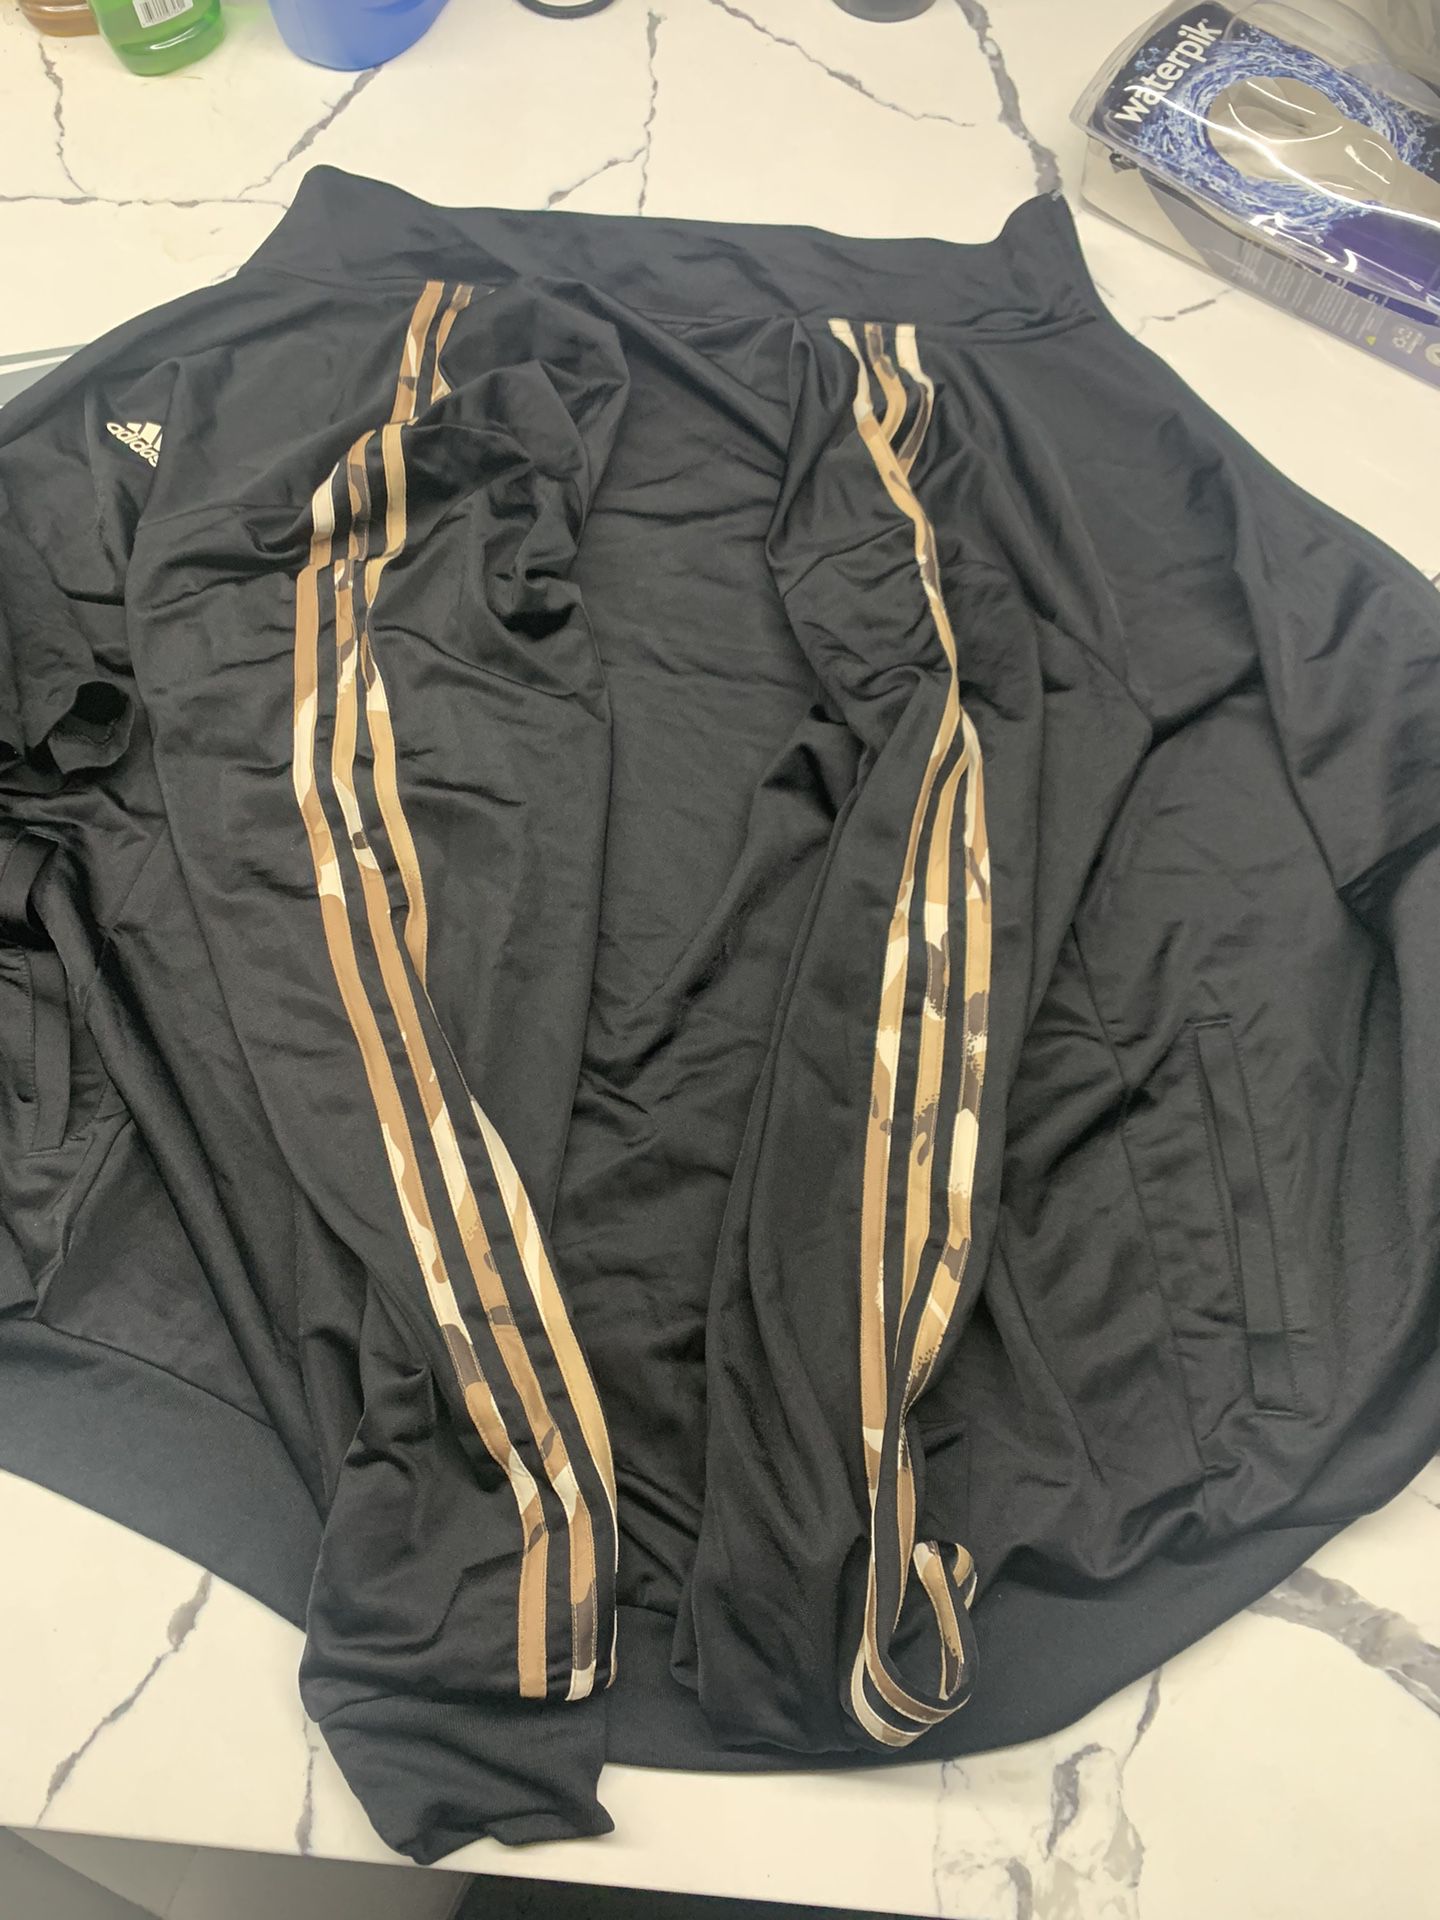 Adidas Xl Jacket And Xl Shirt Desert Tan Camo